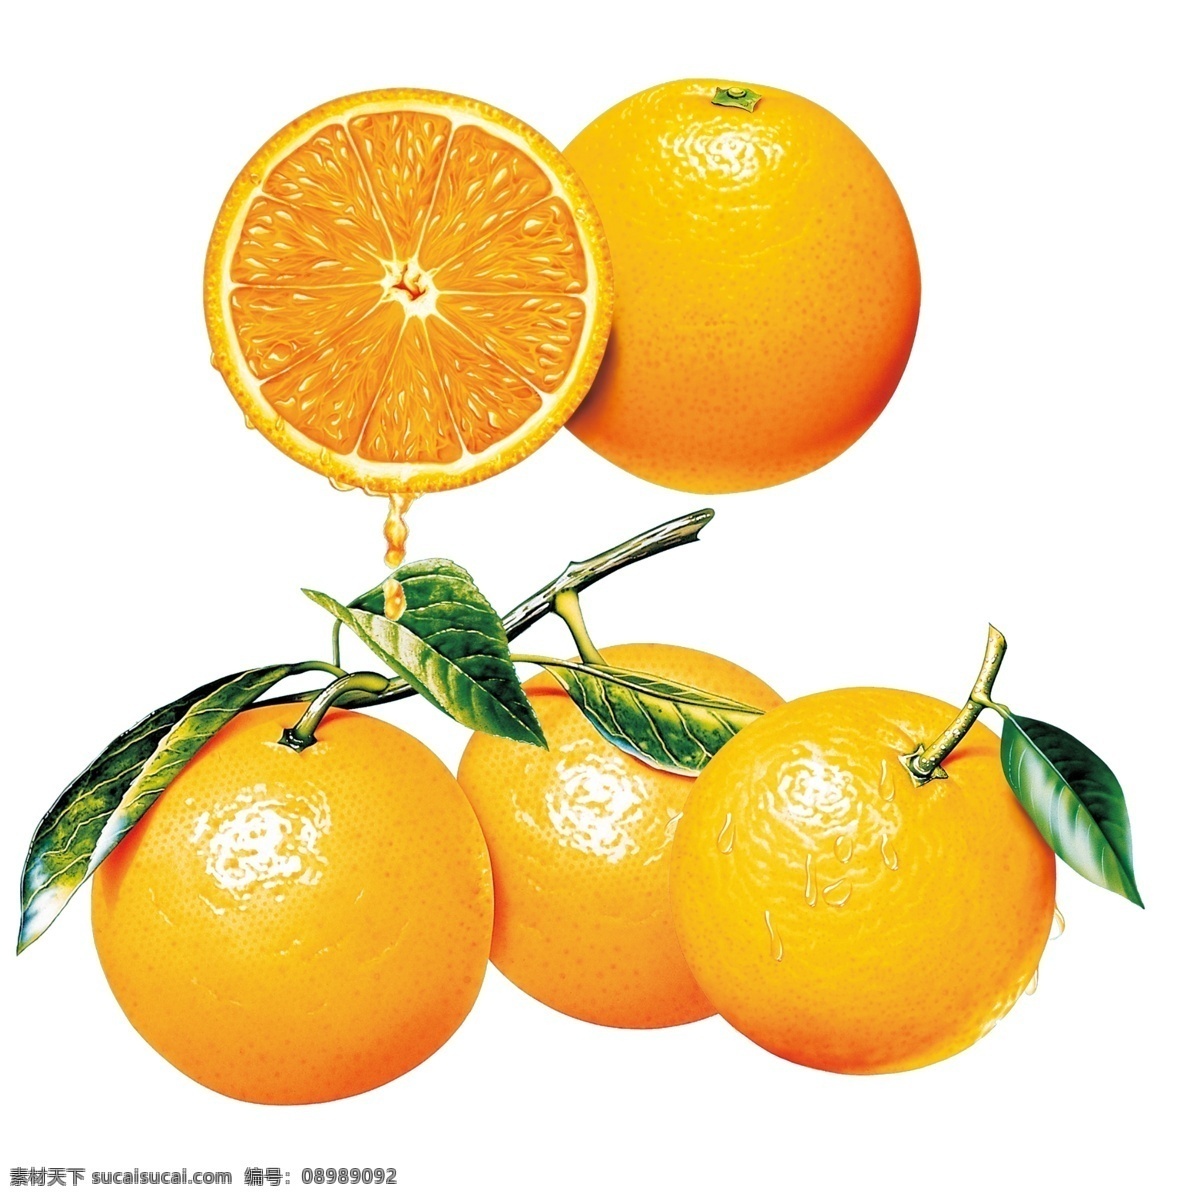 橙子 橙子素材 绿色橙子 柑橘素材 新鲜橙子 橙汁 新鲜水果 新鲜 西柚 绿叶 柑橘 桔子 成熟 脐橙 橙子树 果树 果园 水果 美食 美味 多汁 甜橙 切开的橙子 金色的橙子 分层 源文件